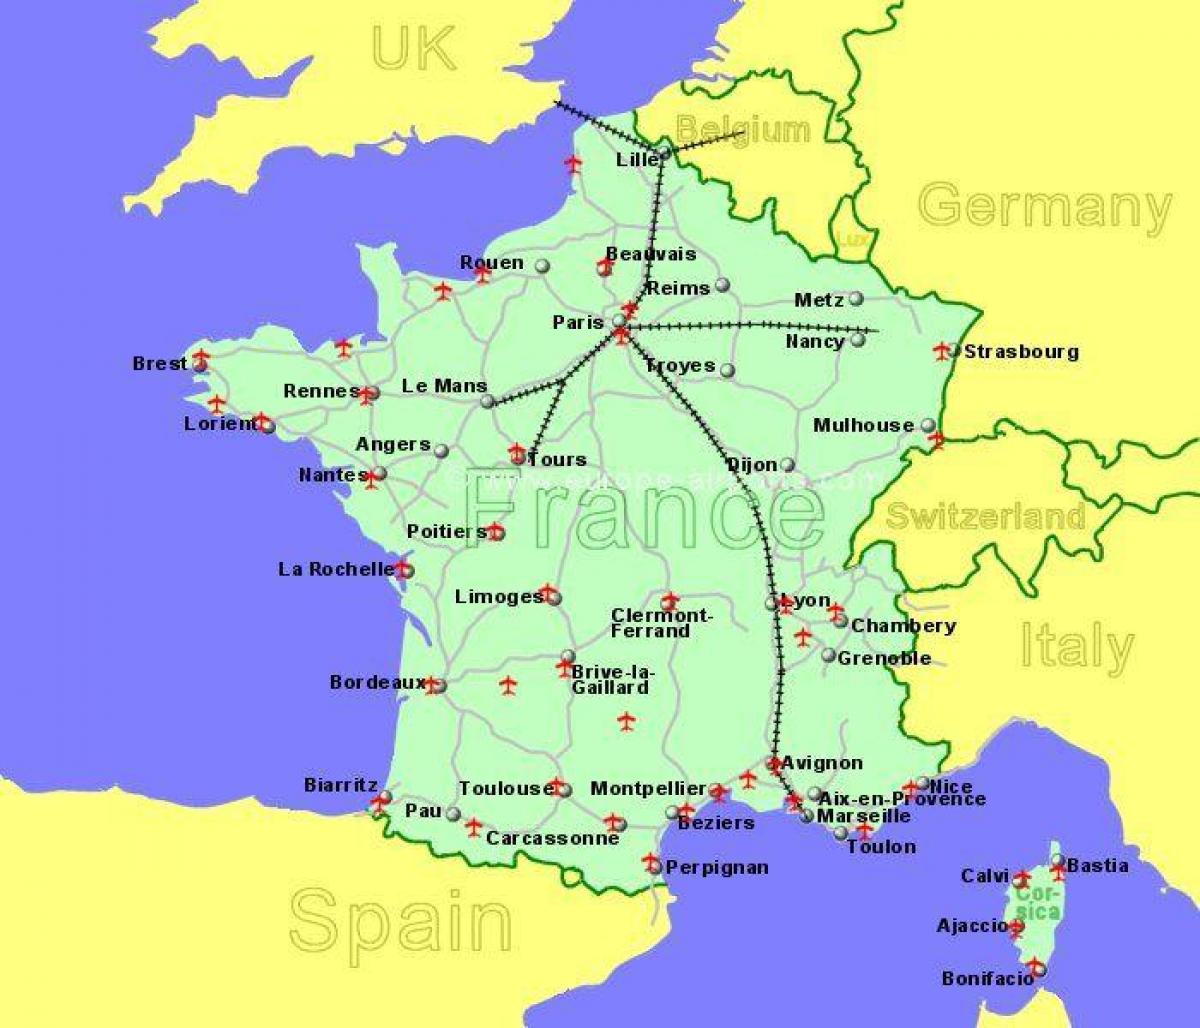 机场的法国南部地图